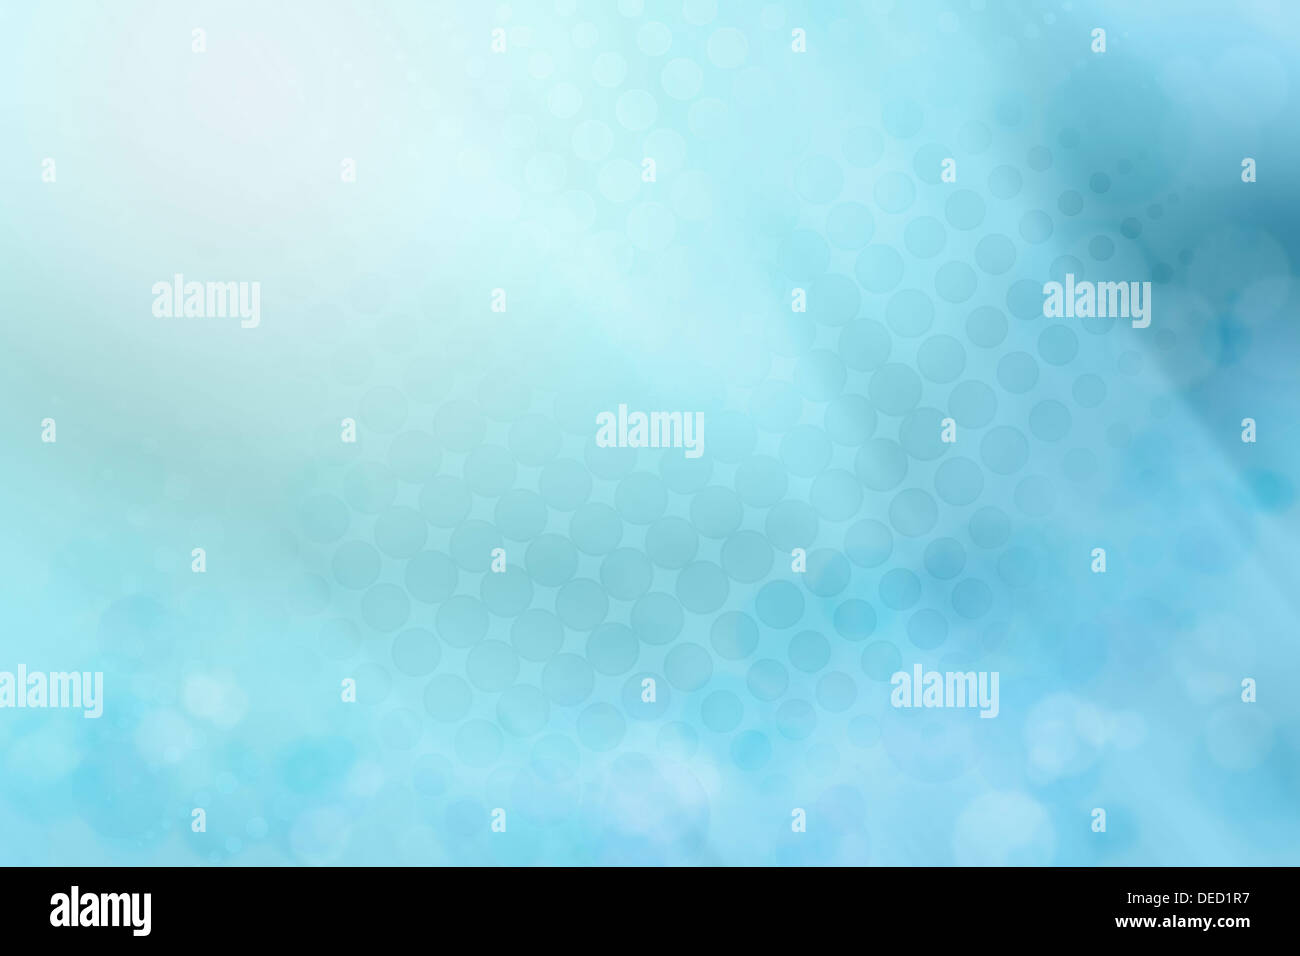 Rasterpunkte auf abstrakte blauem Hintergrund Stockfoto